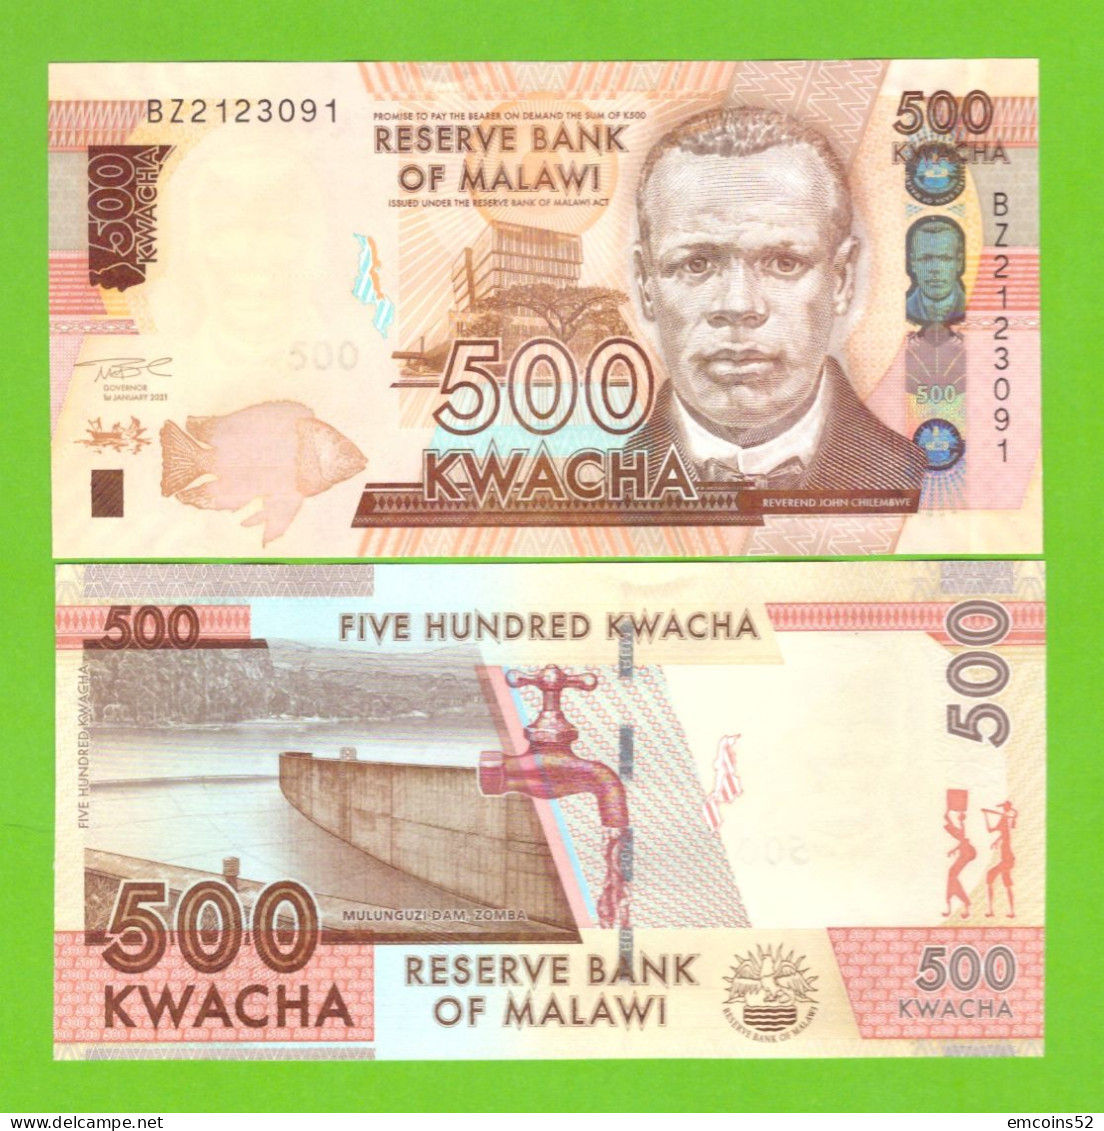 MALAWI 500 KWACHA 2021  P-66 UNC - Malawi